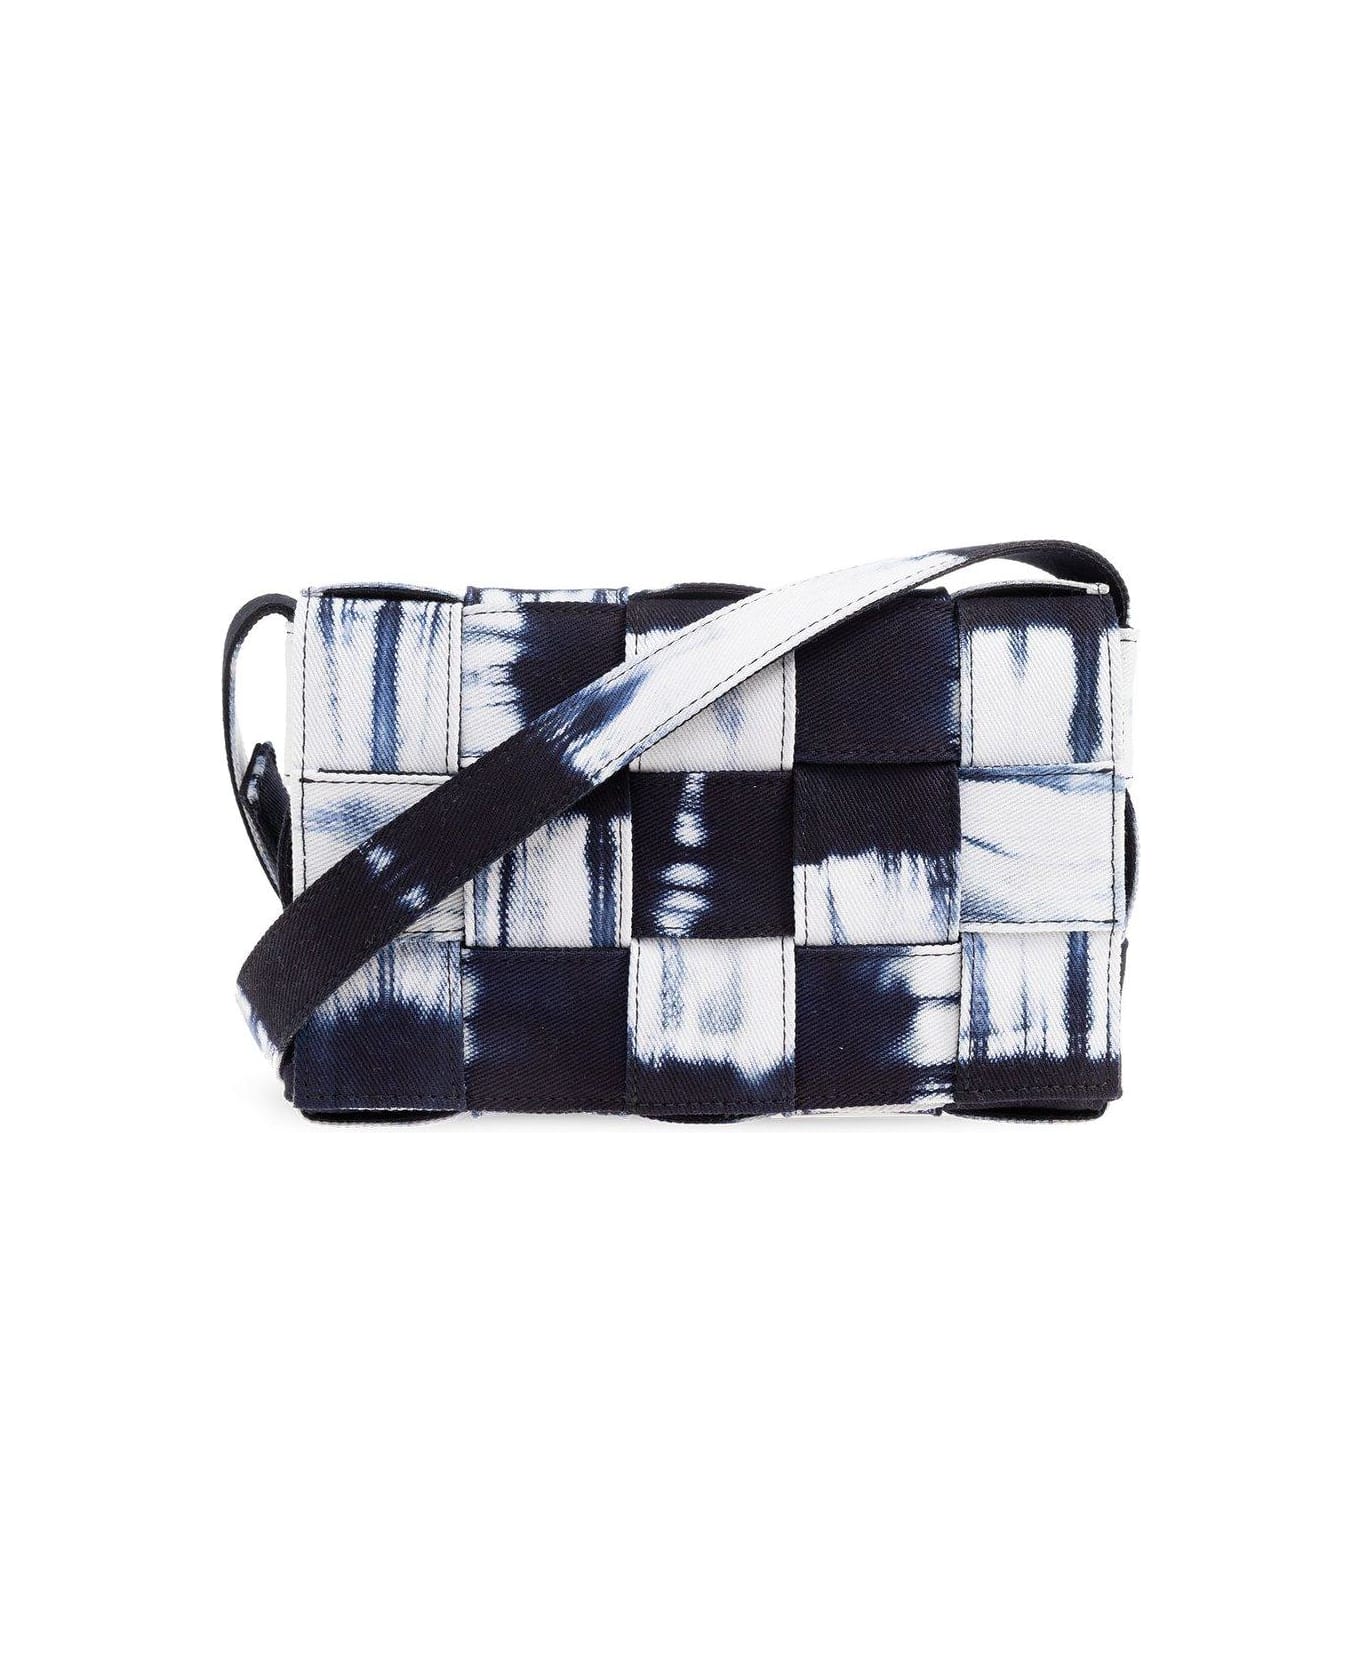 Bottega Veneta Cassette Shoulder Bag - Navy white silver ショルダーバッグ